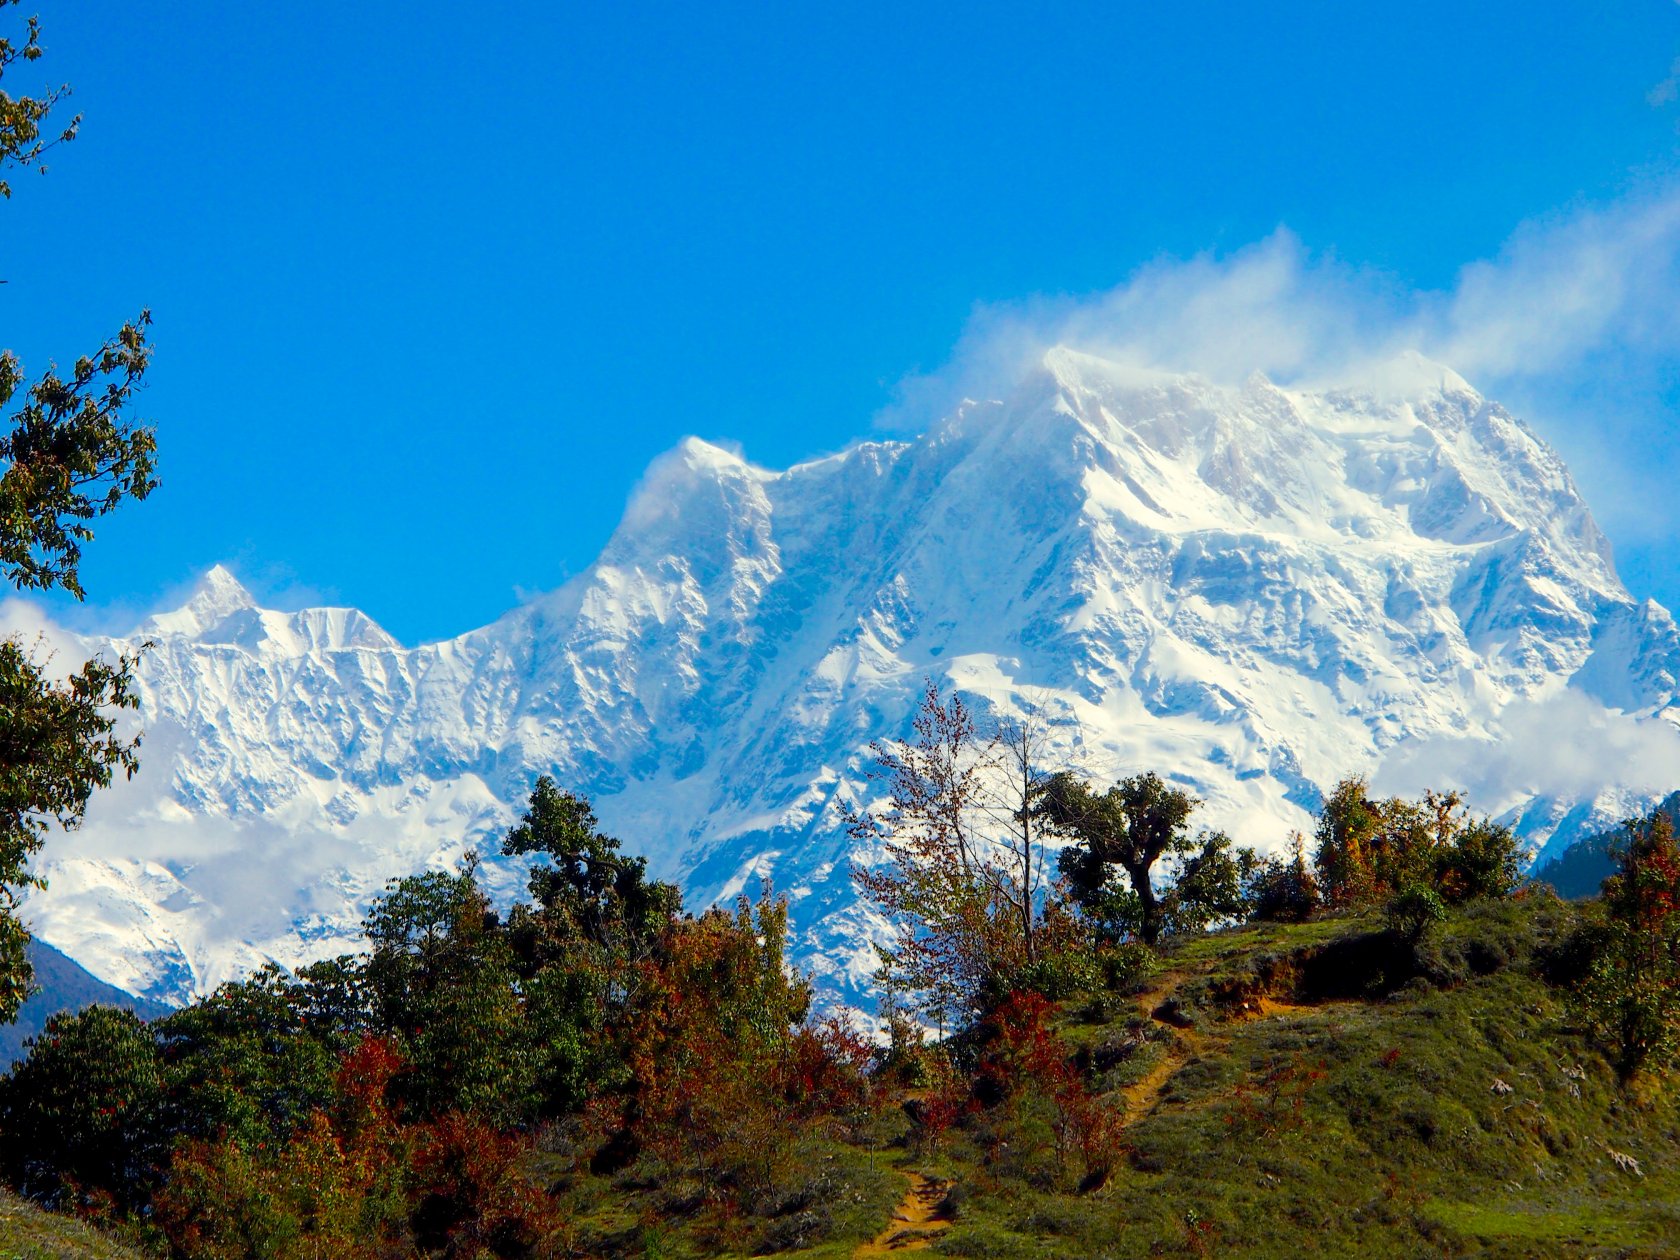 Гималаи что это. Непал Гималаи. Индия горы Гималаи. Горный массив в Гималаях. Тибет Эверест Гималаи.